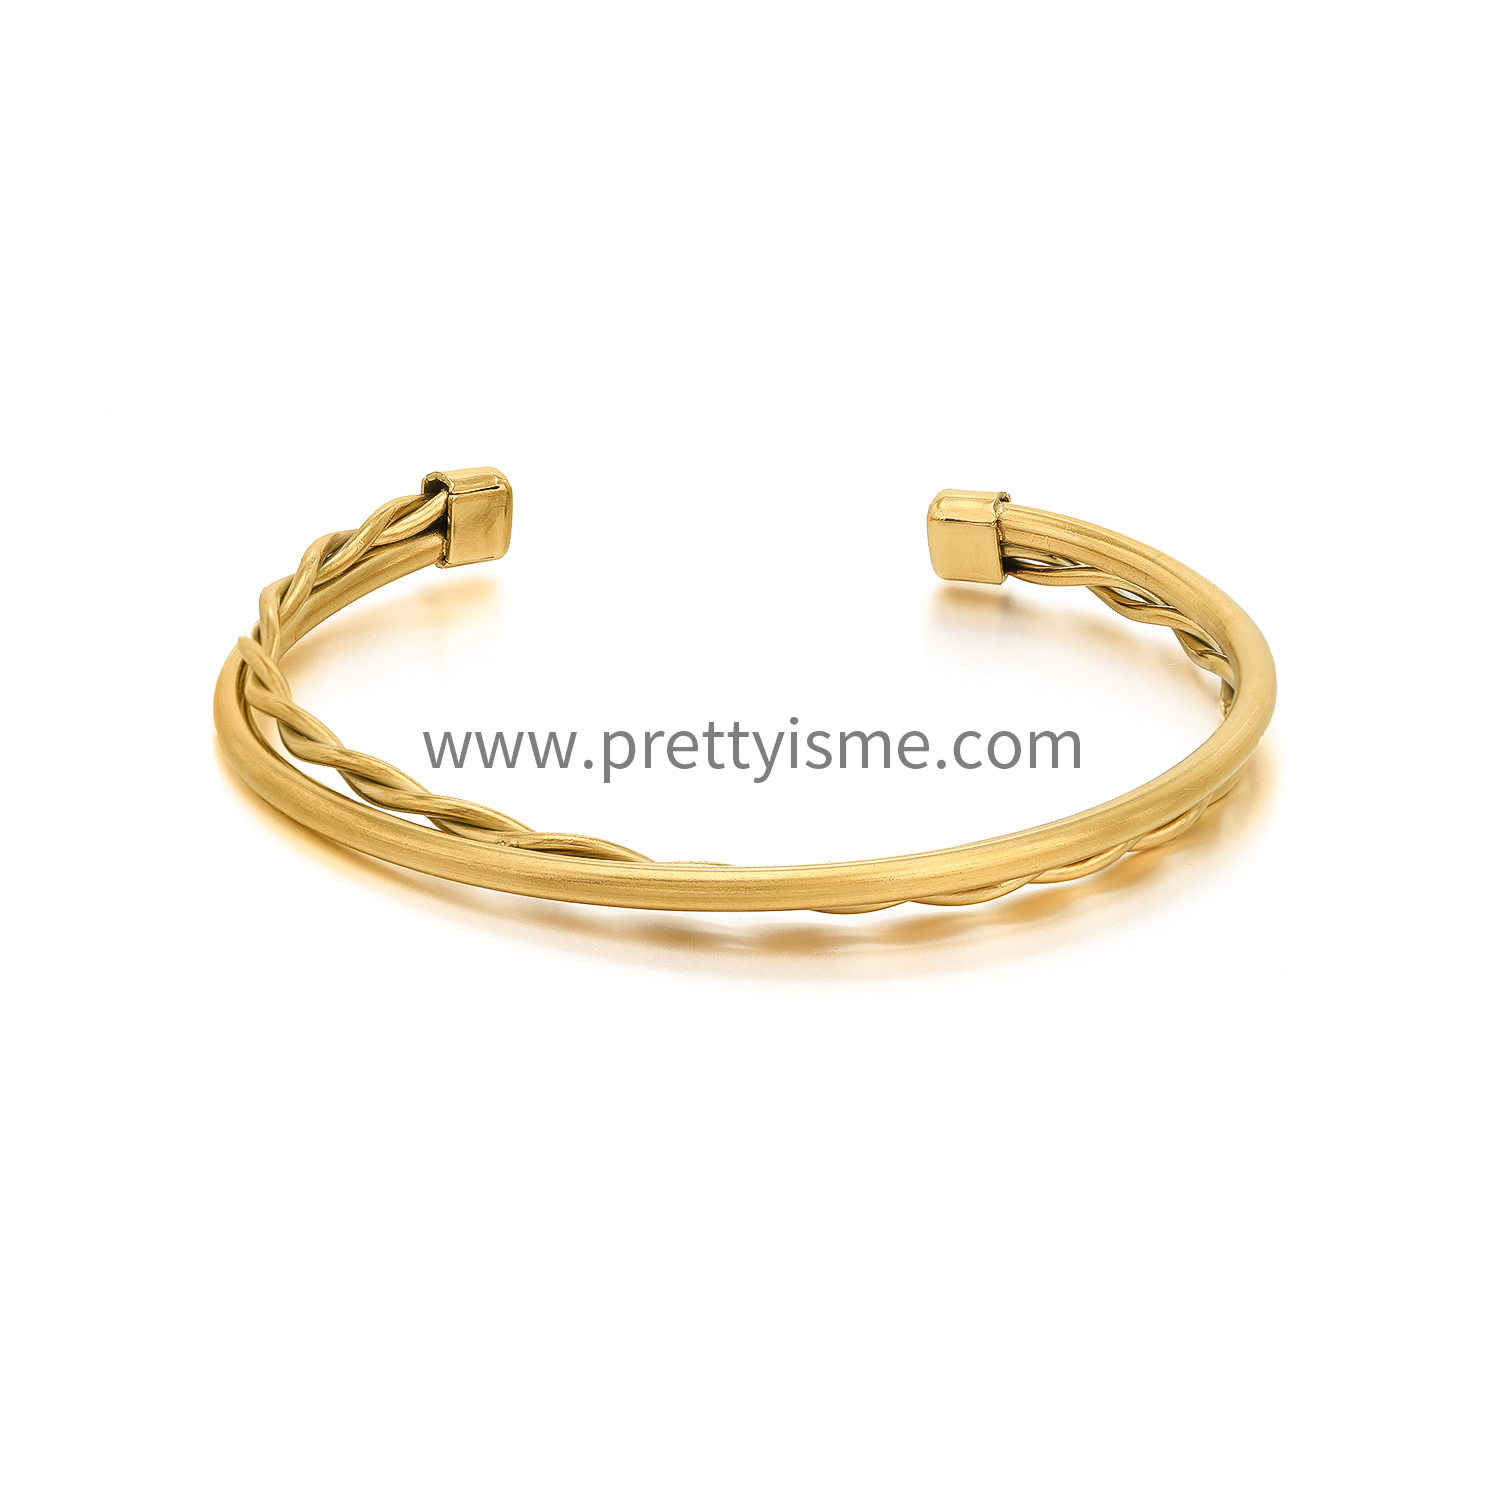 Interwoven Smooth Gold Stainless Steel Bracelet Waterproof Elegant Simple Bracelet (5).webp